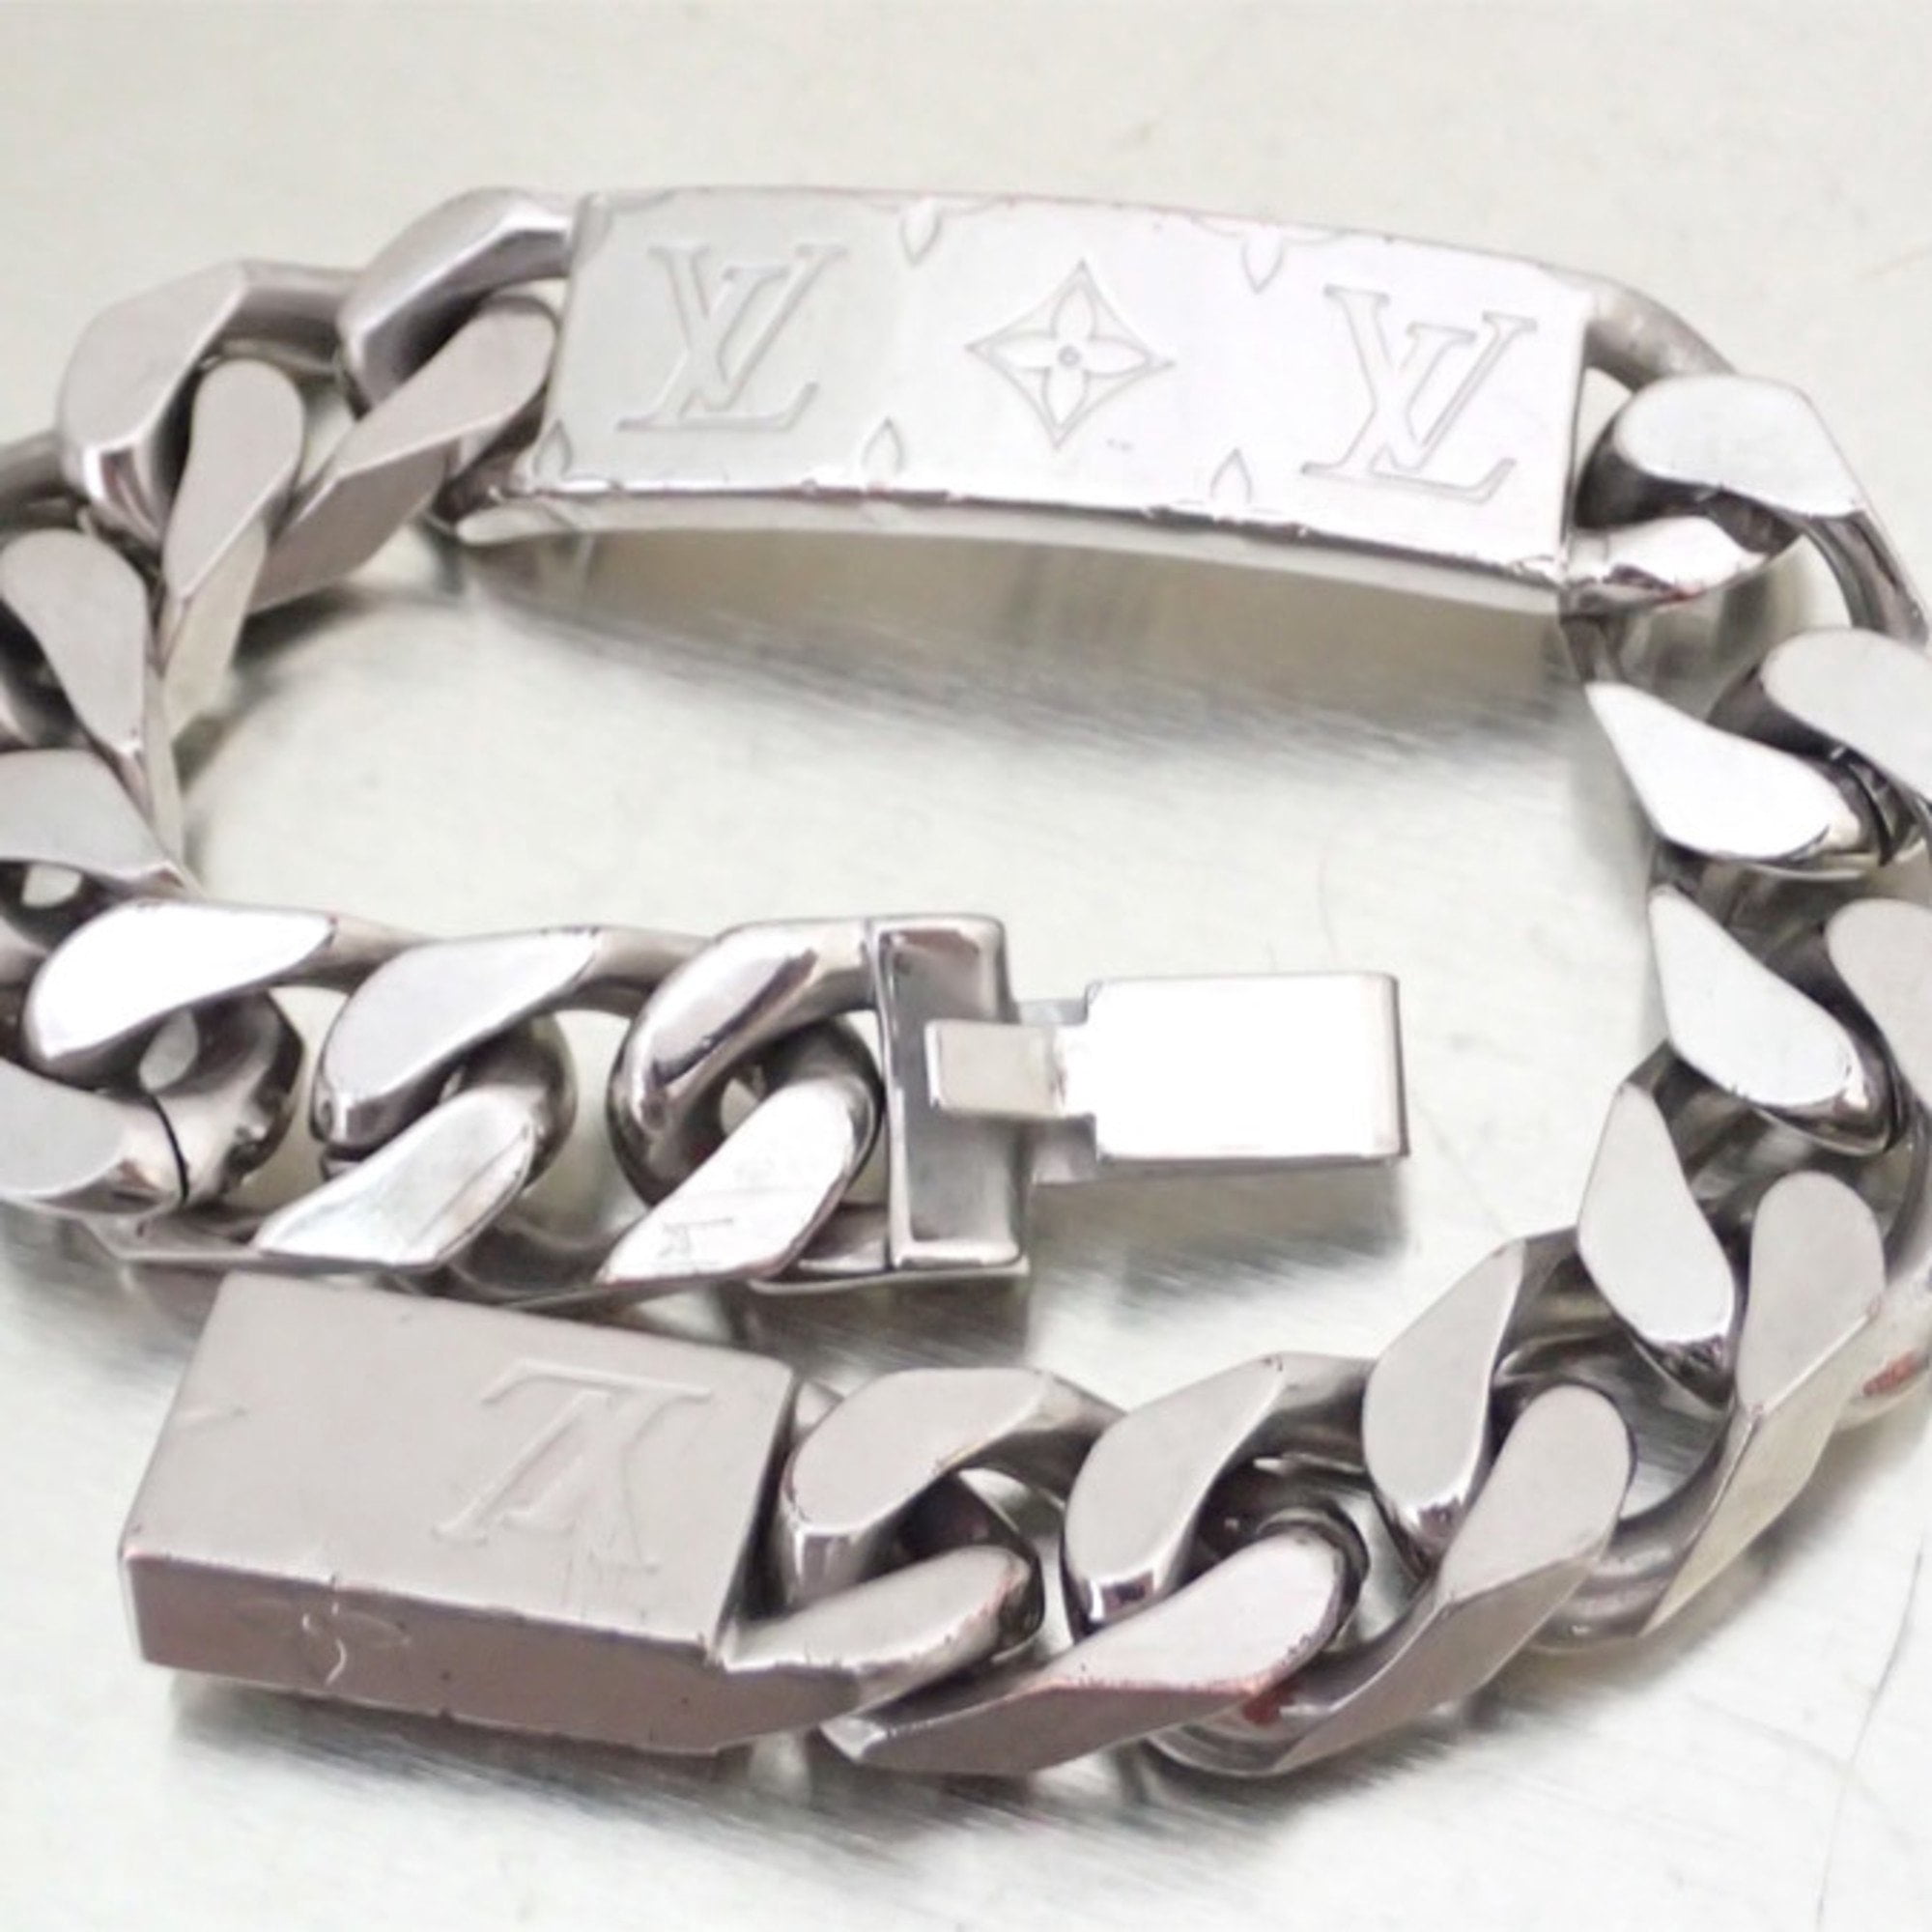 Louis Vuitton Authenticated Monogram Bracelet